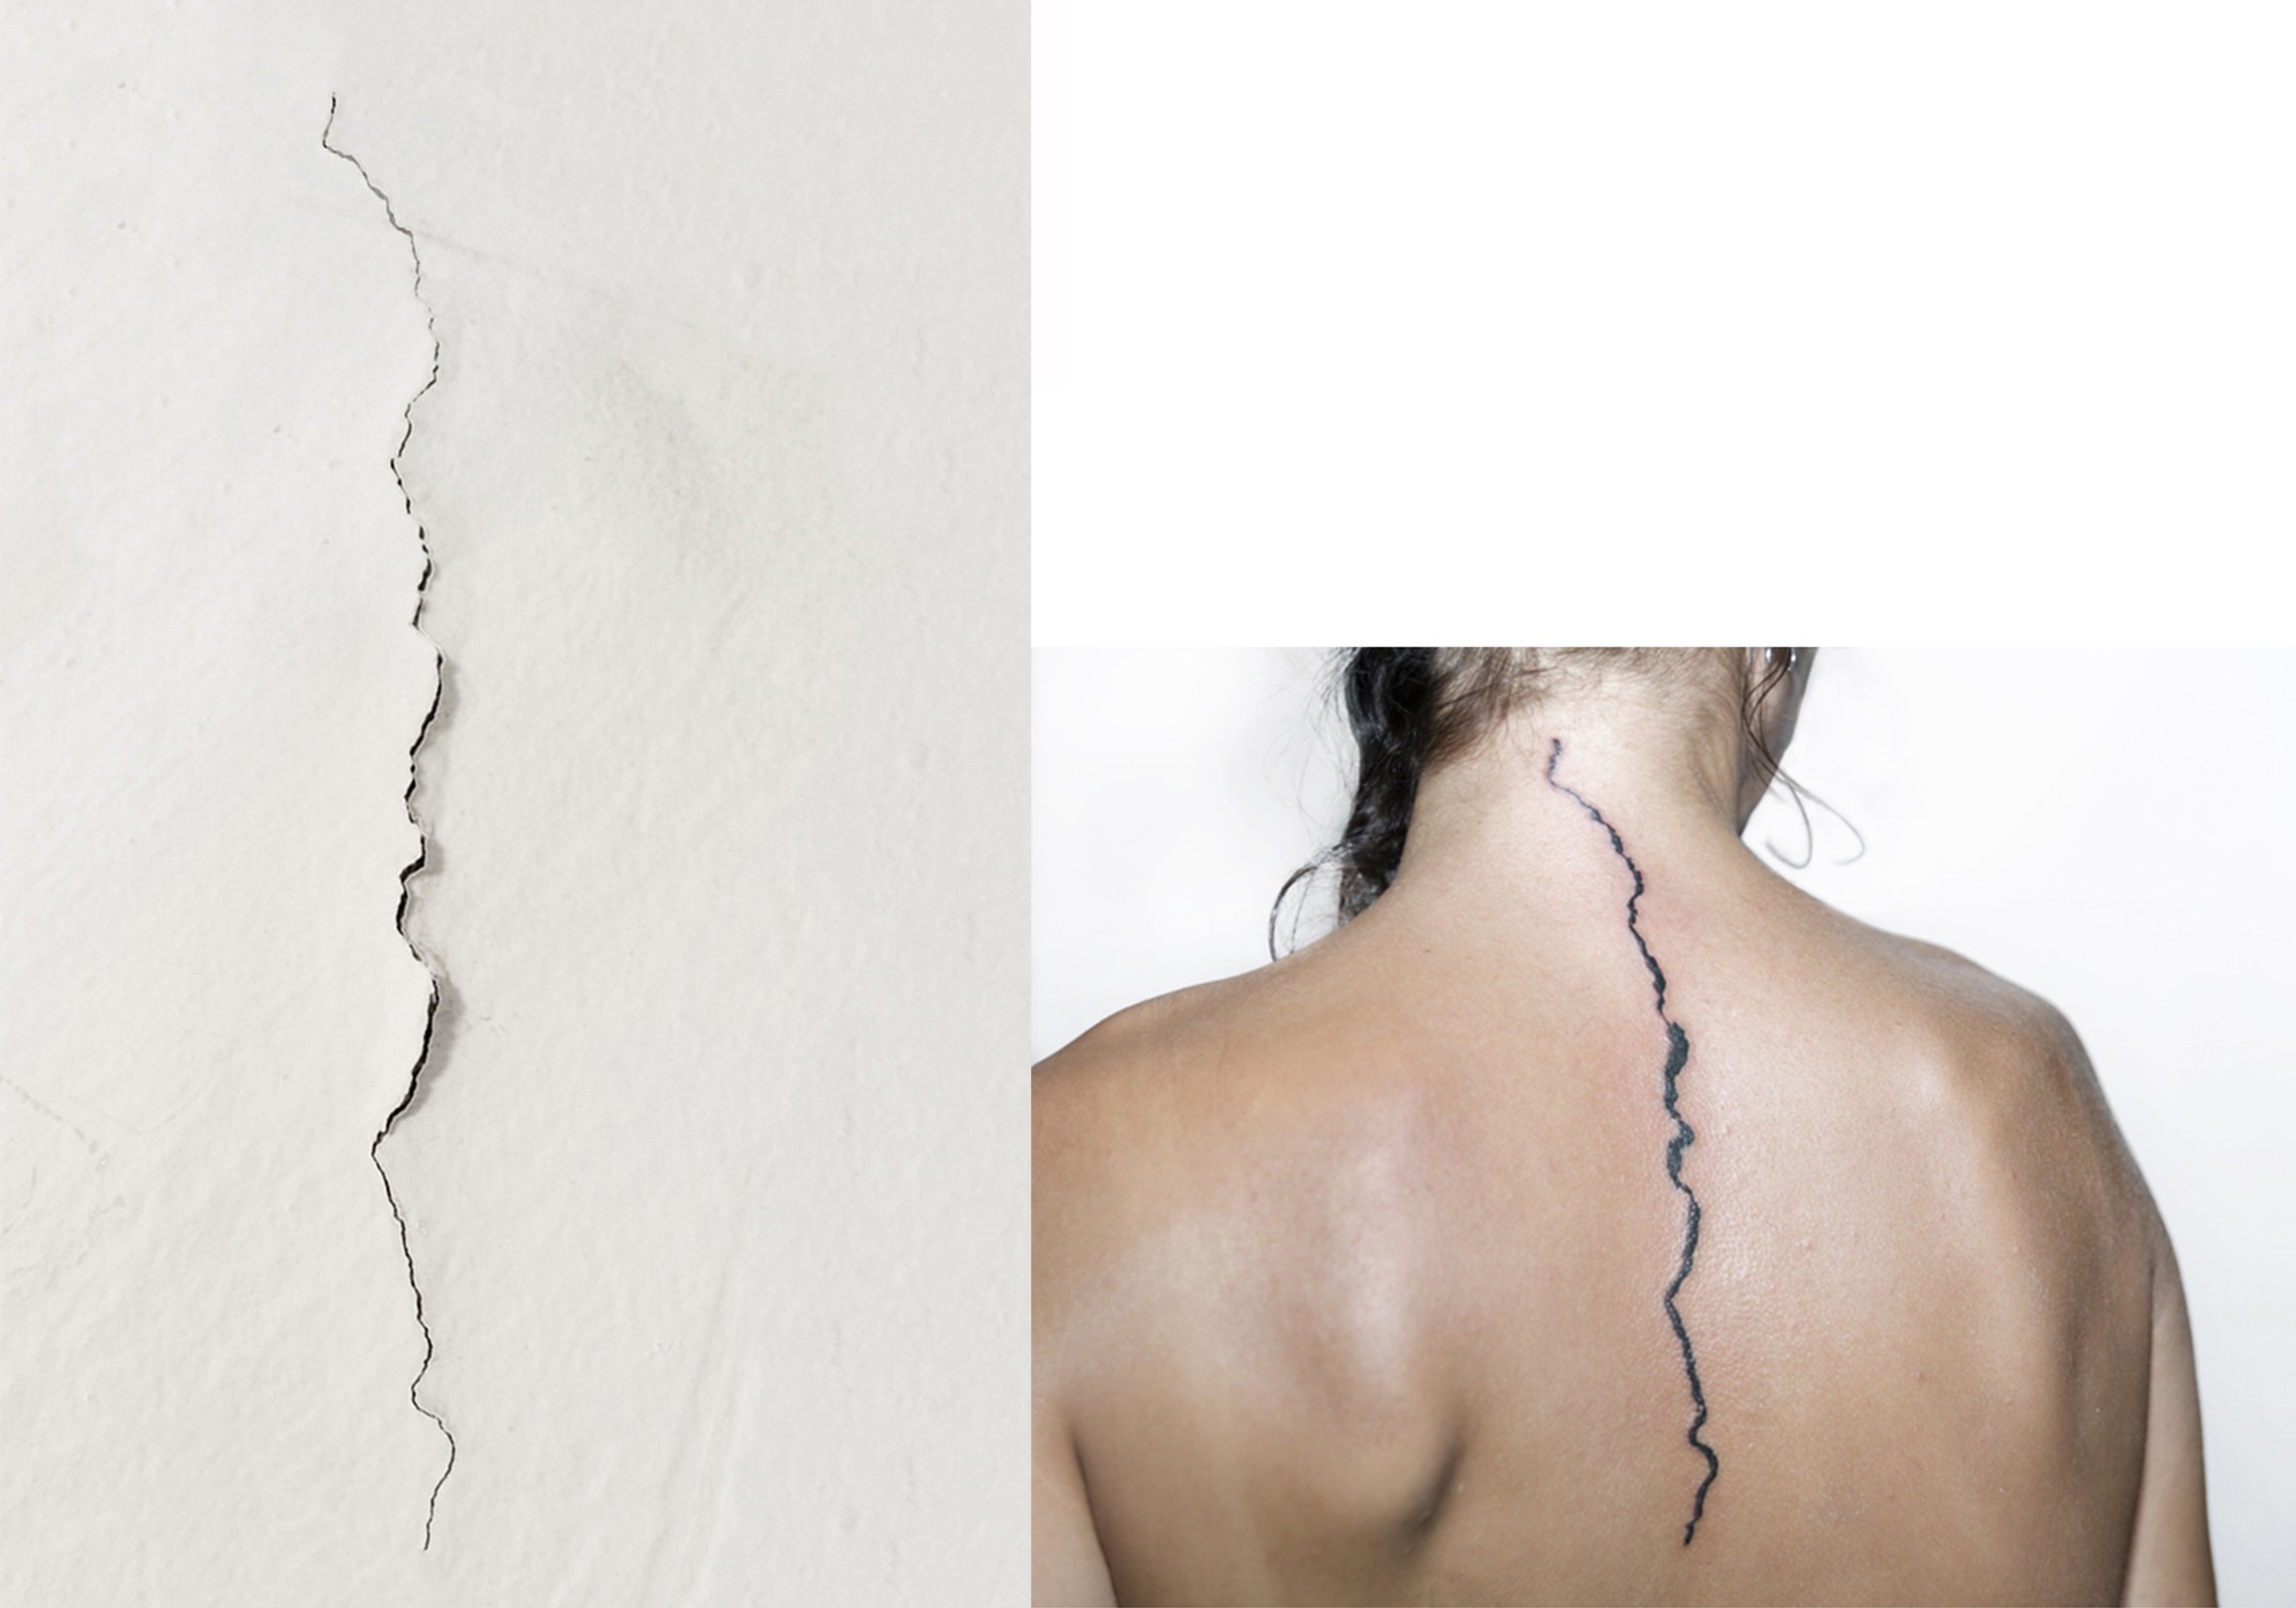 Zweiteiliges Bild - auf der einen Seite ein Riss in der Wand, auf der anderen Seite der selbe Riss der auf den Rücken einer Frau tättwier ist.